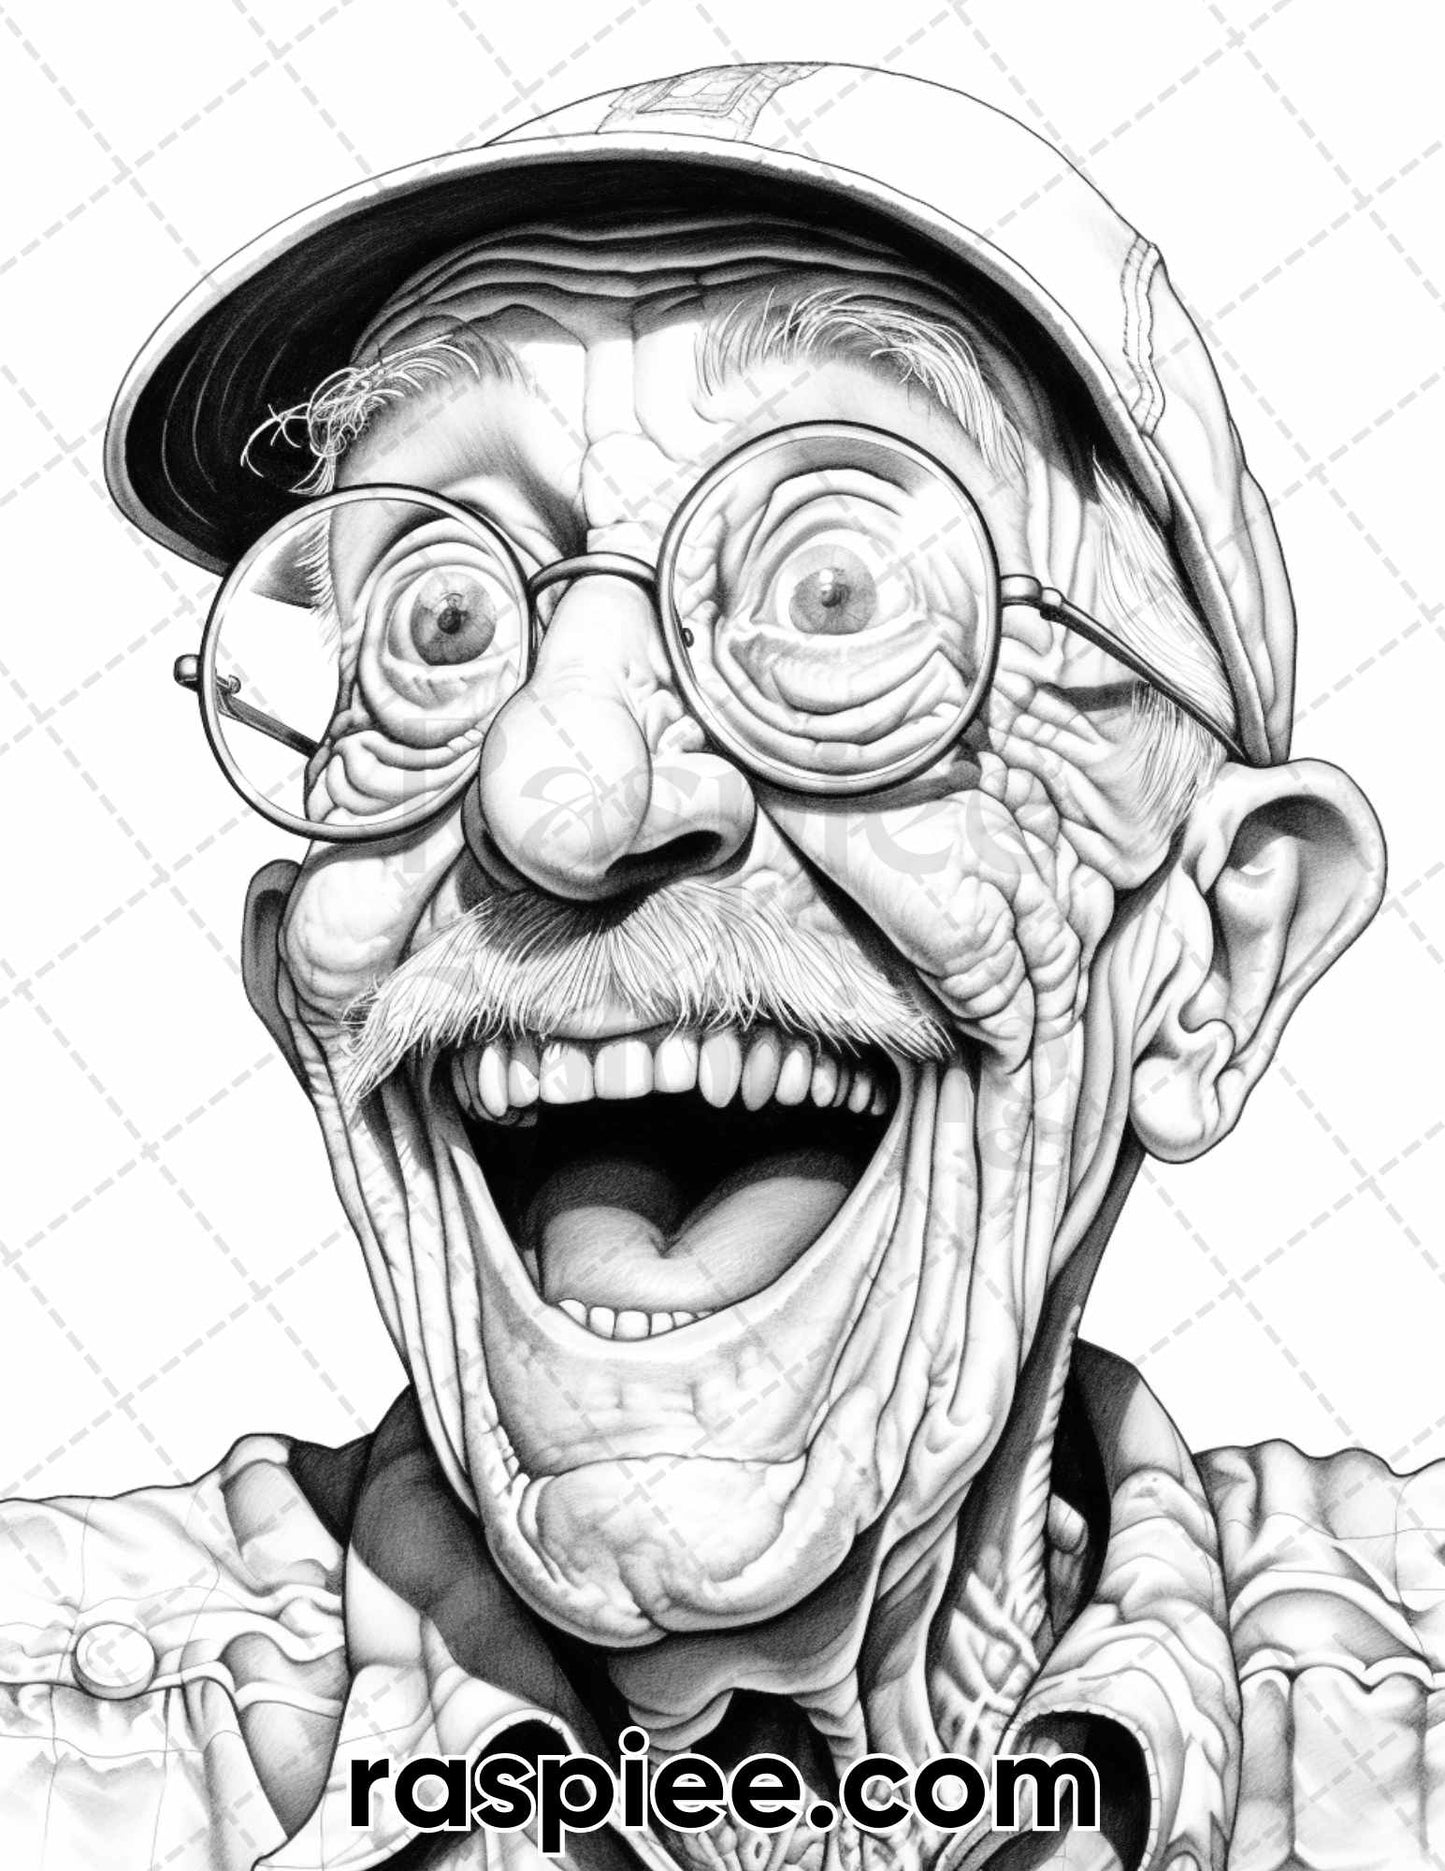 Portrait Coloring Pages for Adults, Portrait Coloring Book Printable, Men Portrait Coloring Pages, Grandpa Coloring Pages, Funny Grandpa Coloring Pages, Grayscale Coloring Pages for Adults